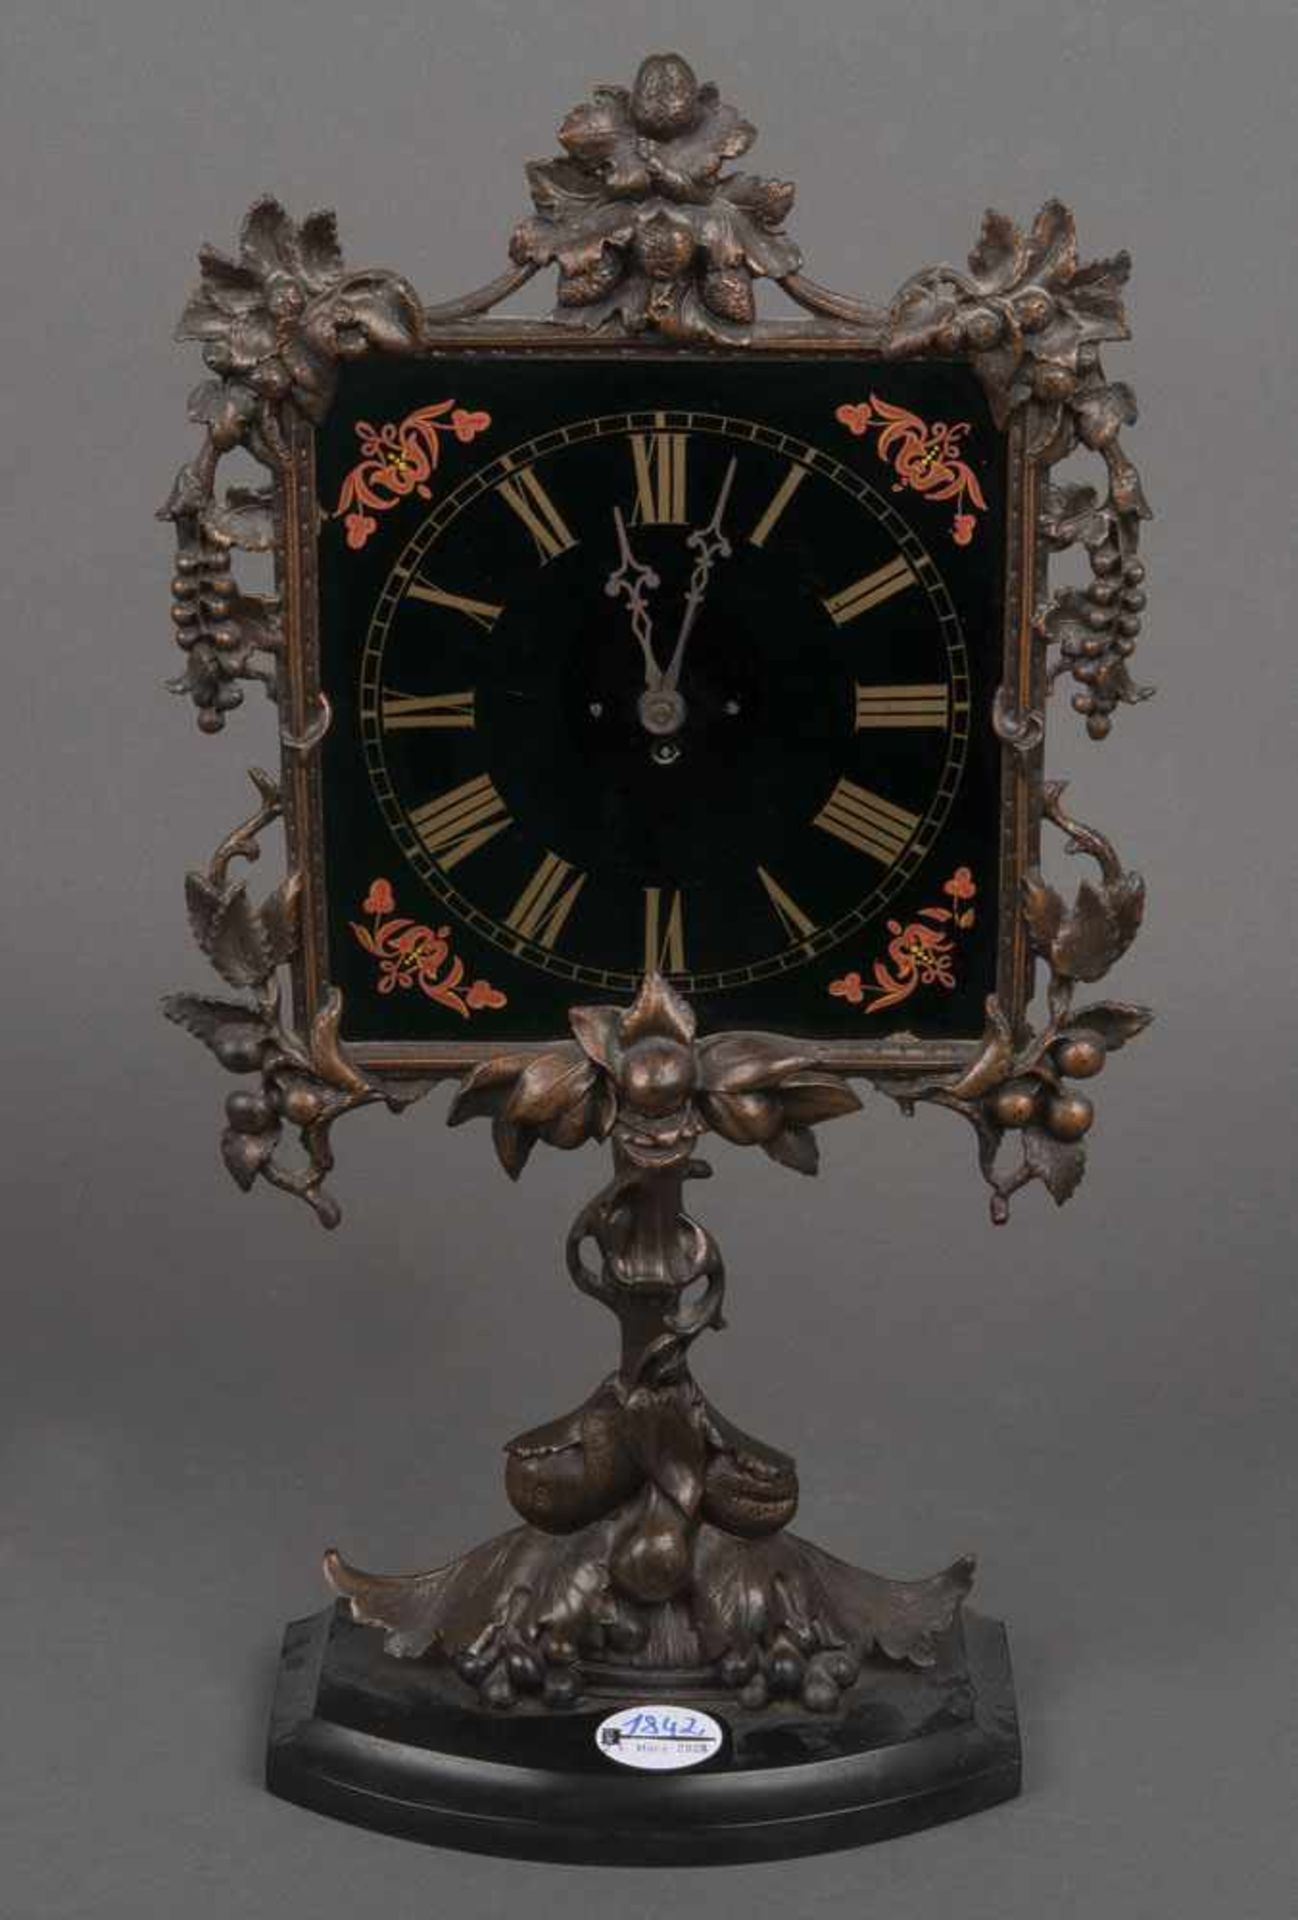 Tischuhr. Deutsch 20. Jh. Metall, mit Hinterglasmalerei, H=43 cm. (Gängigkeit ungeprüft)